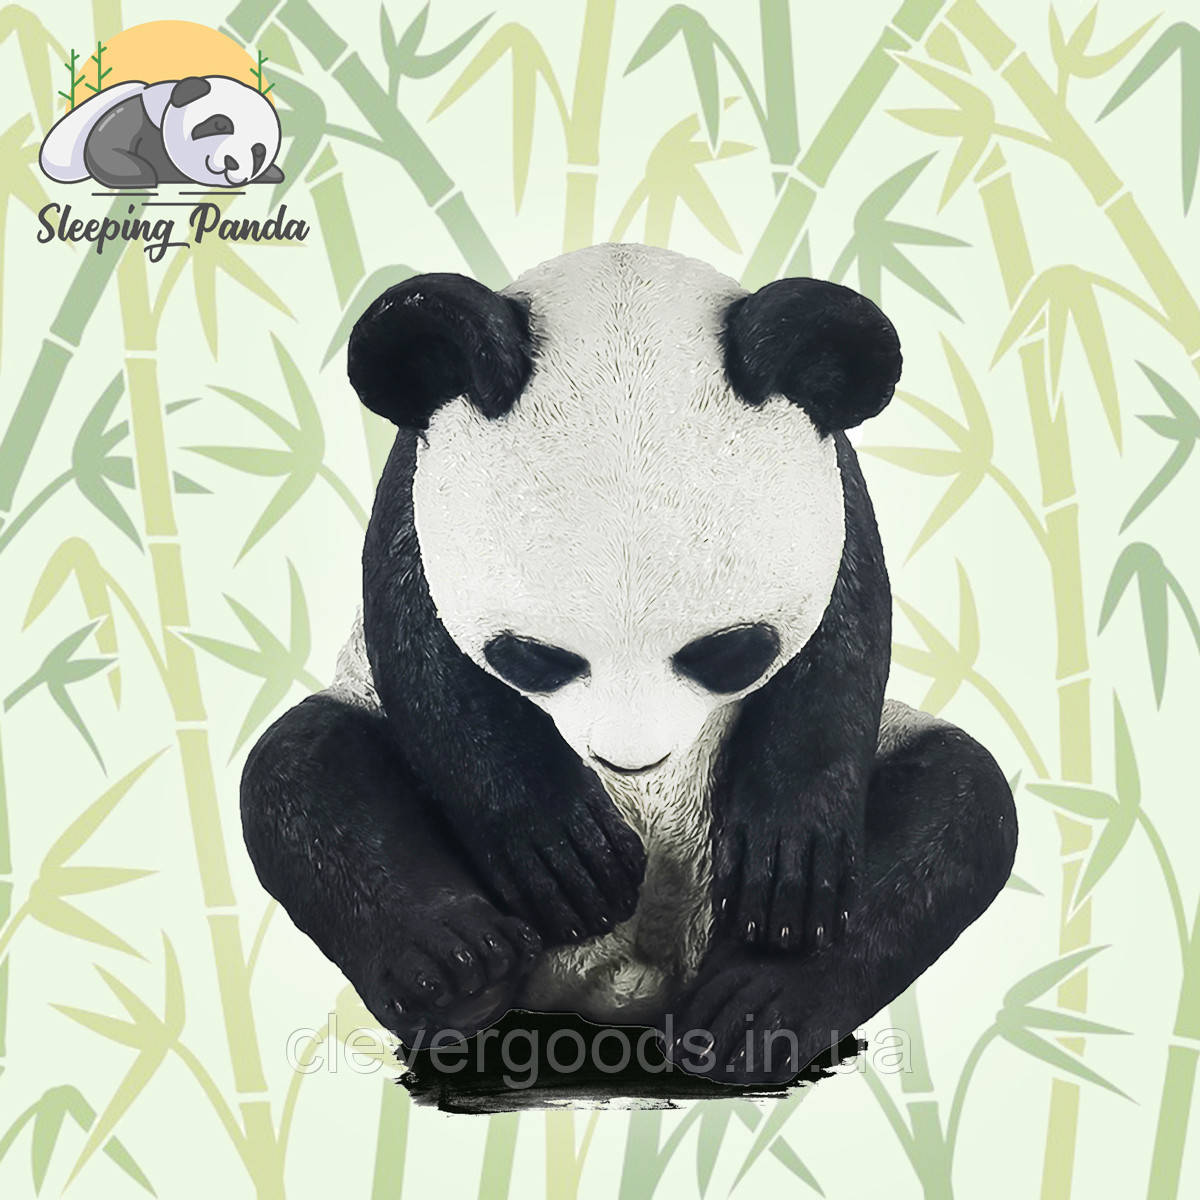 Декоративна скульптура для саду "Sleeping panda" 27,8х27х26,5 см статуетка для саду, садова фігурка (ST)